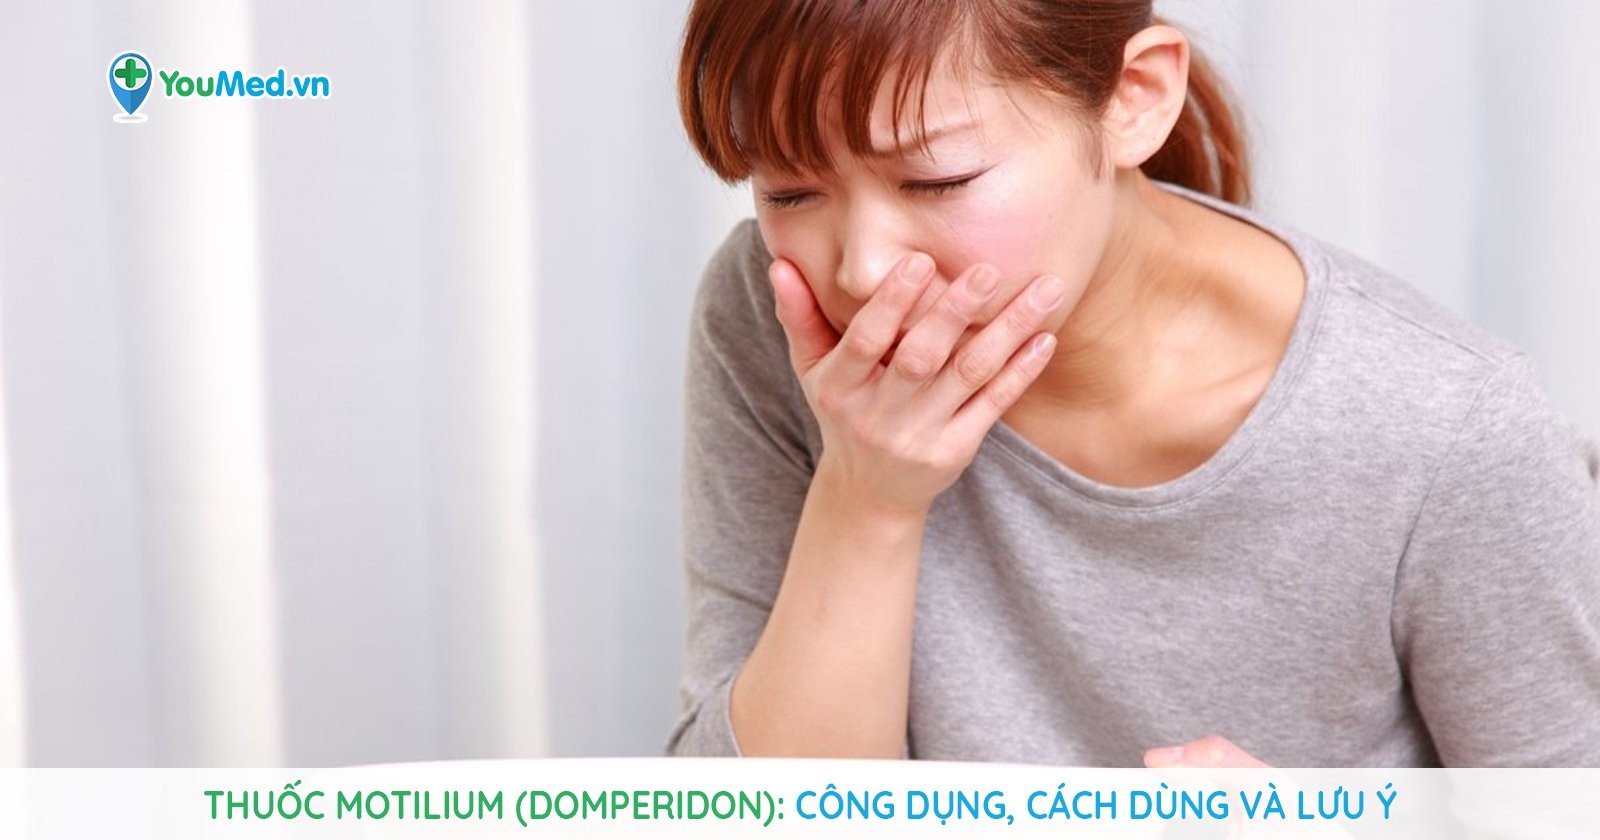 Thuốc đau bao tử motilium có tác dụng gì?